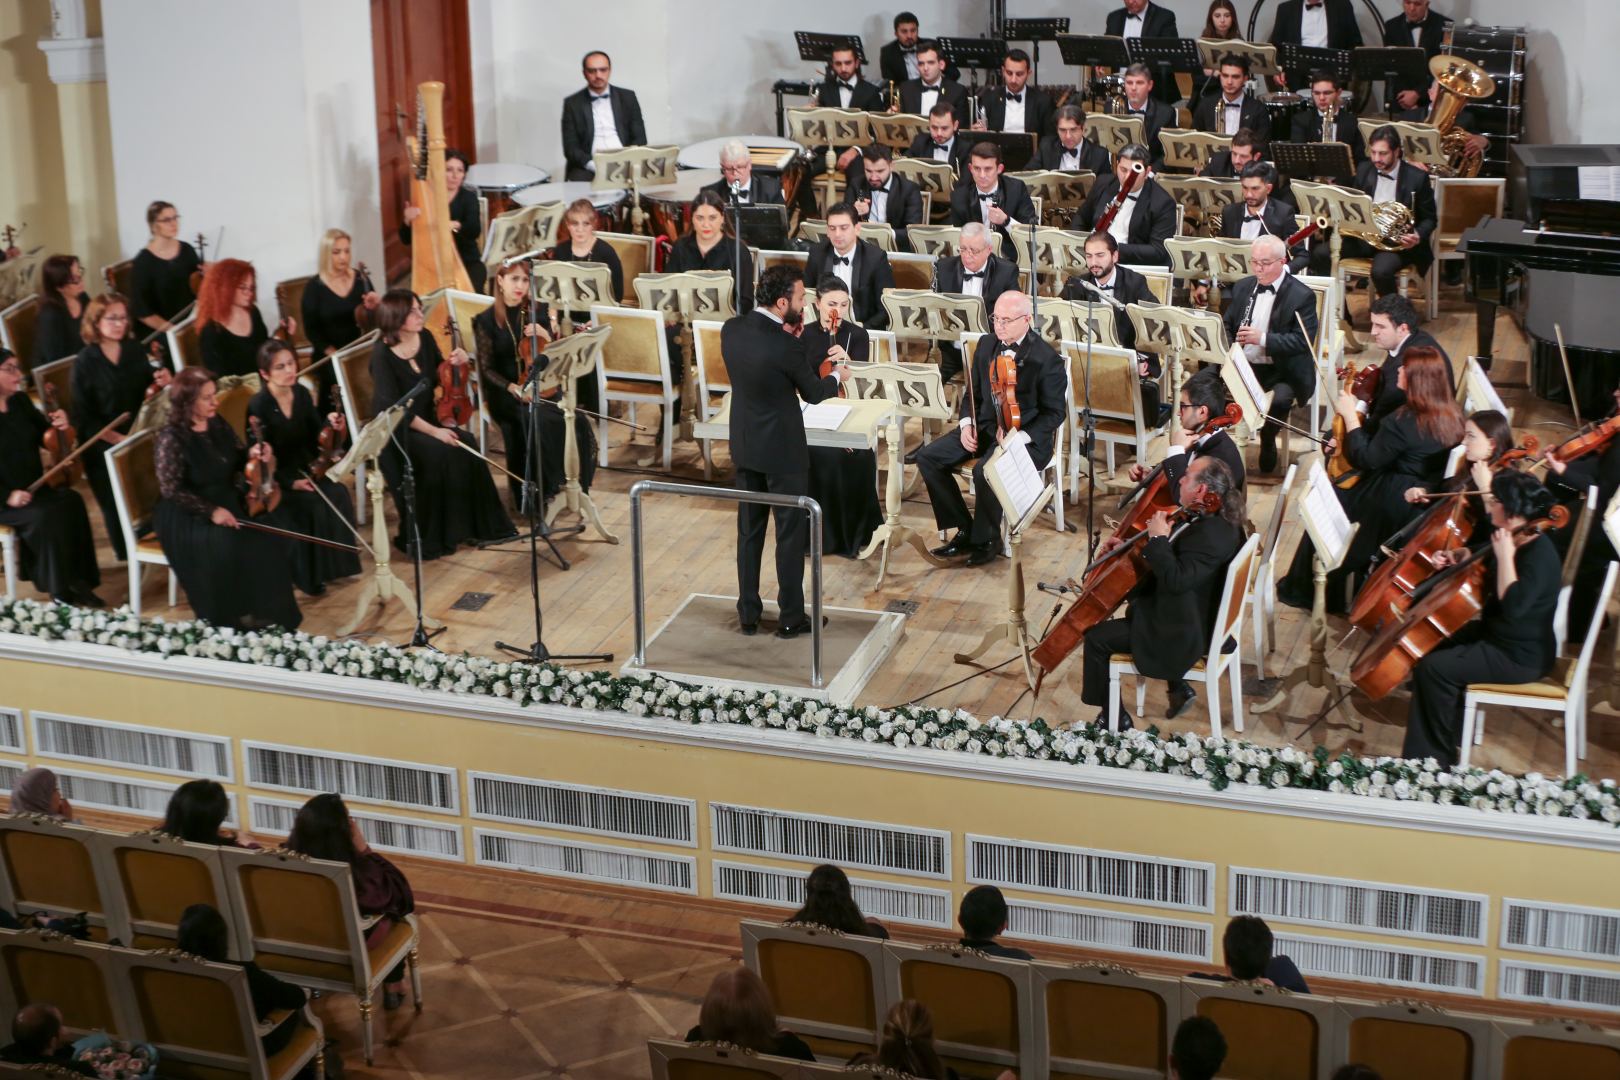 В Филармонии состоялось торжественное закрытие фестиваля "Рауф Гаджиев -100" (ФОТО/ВИДЕО)